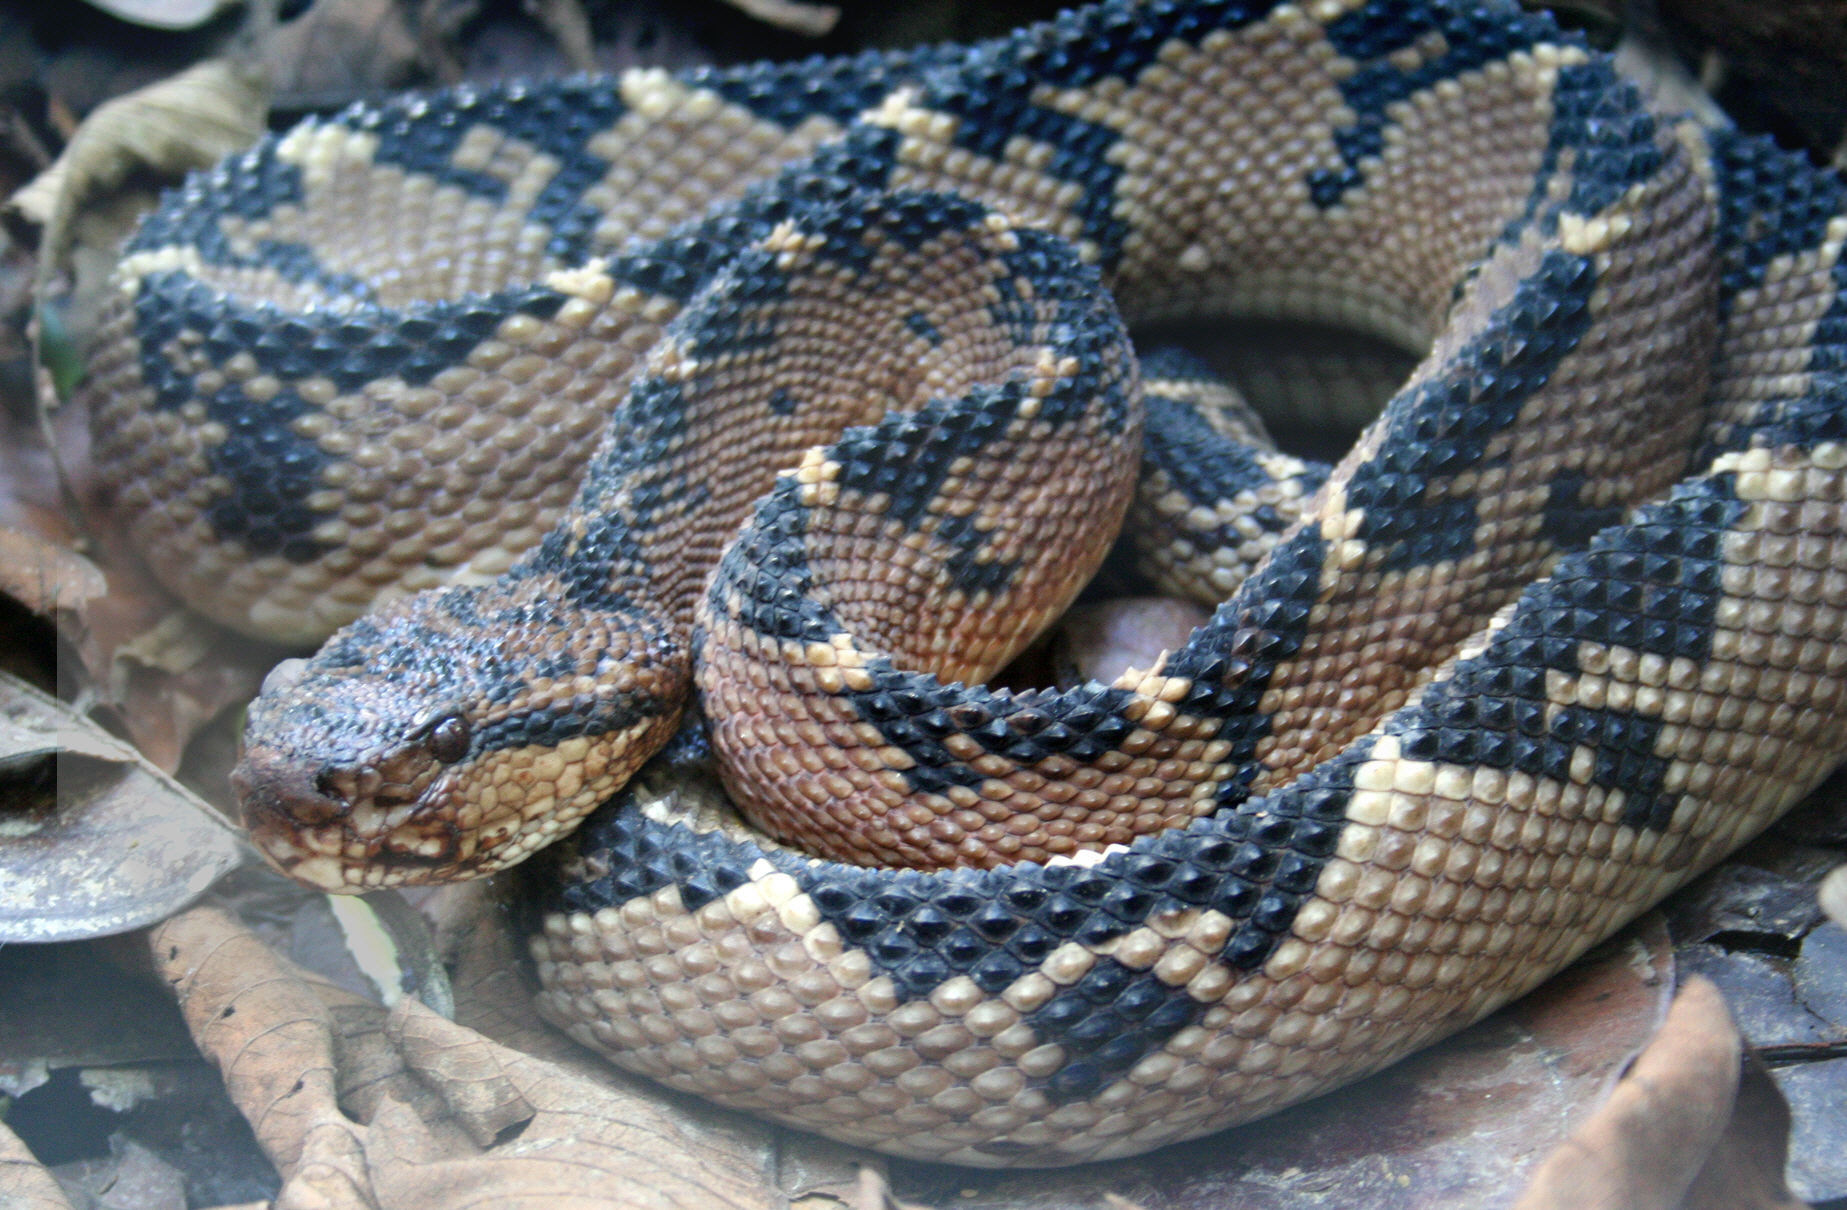 [Image of bushmaster snake]